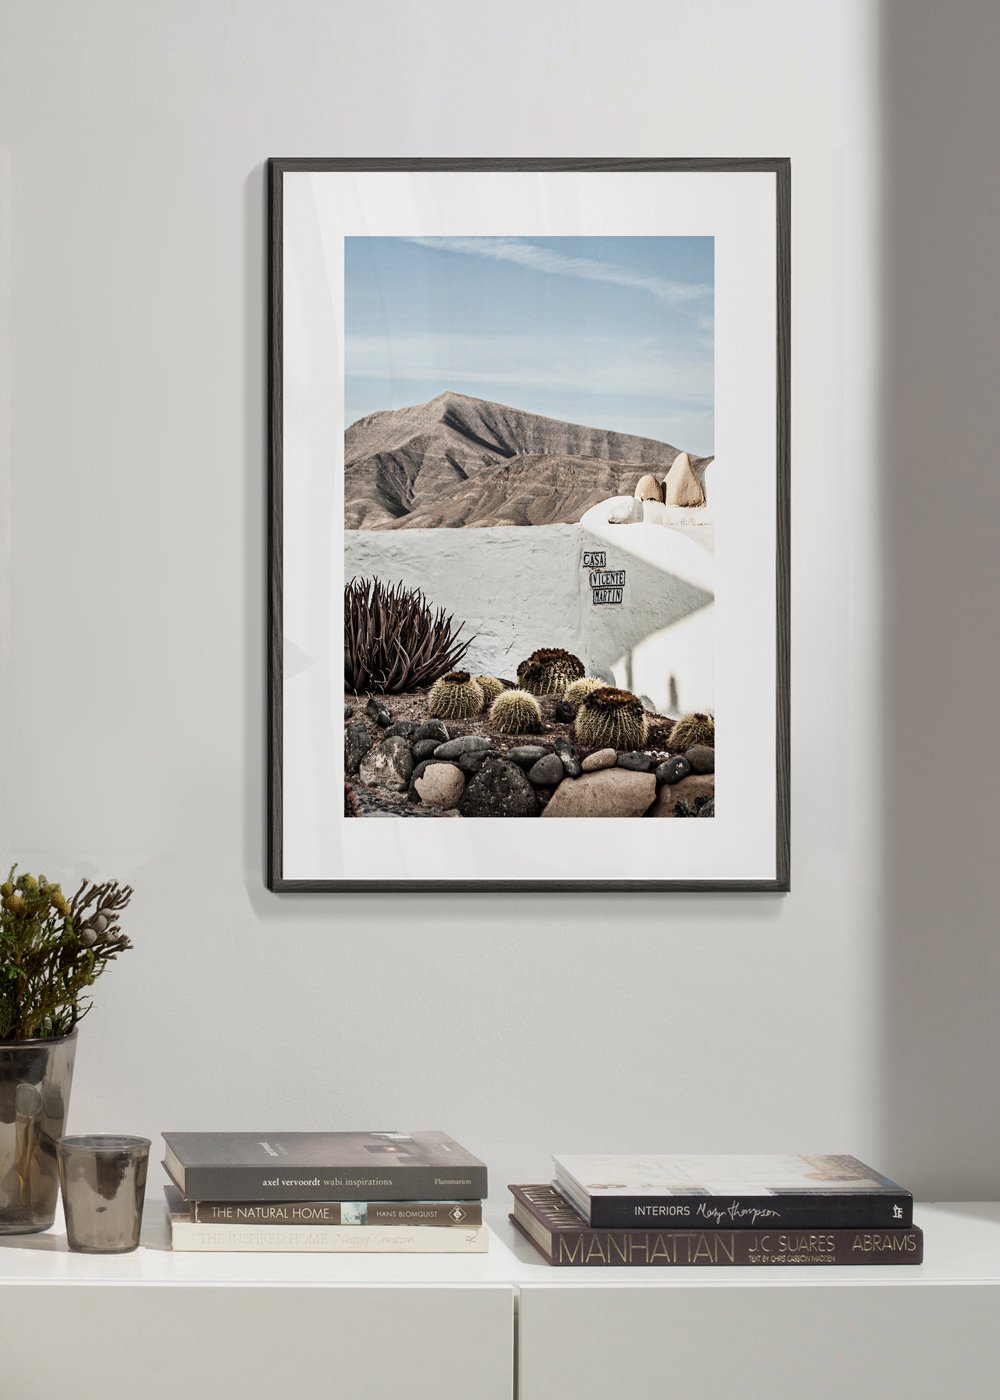 Marco blanco 50x70cm - Marcos para cuadros modernos – Artesta